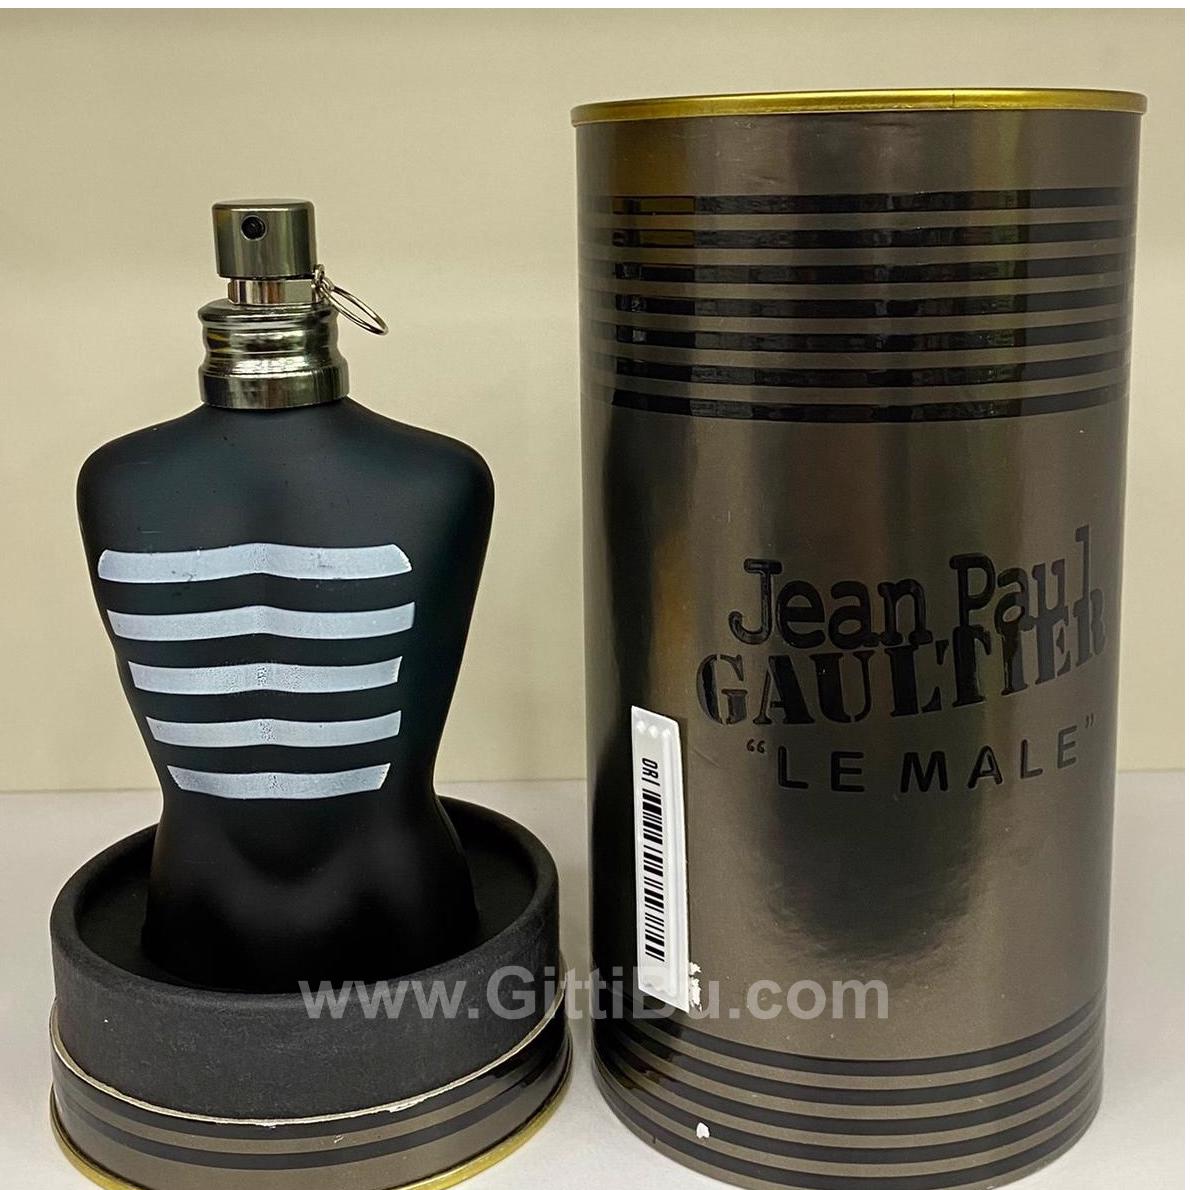 Jean Paul Gaultier Le Male Edt 100 Ml